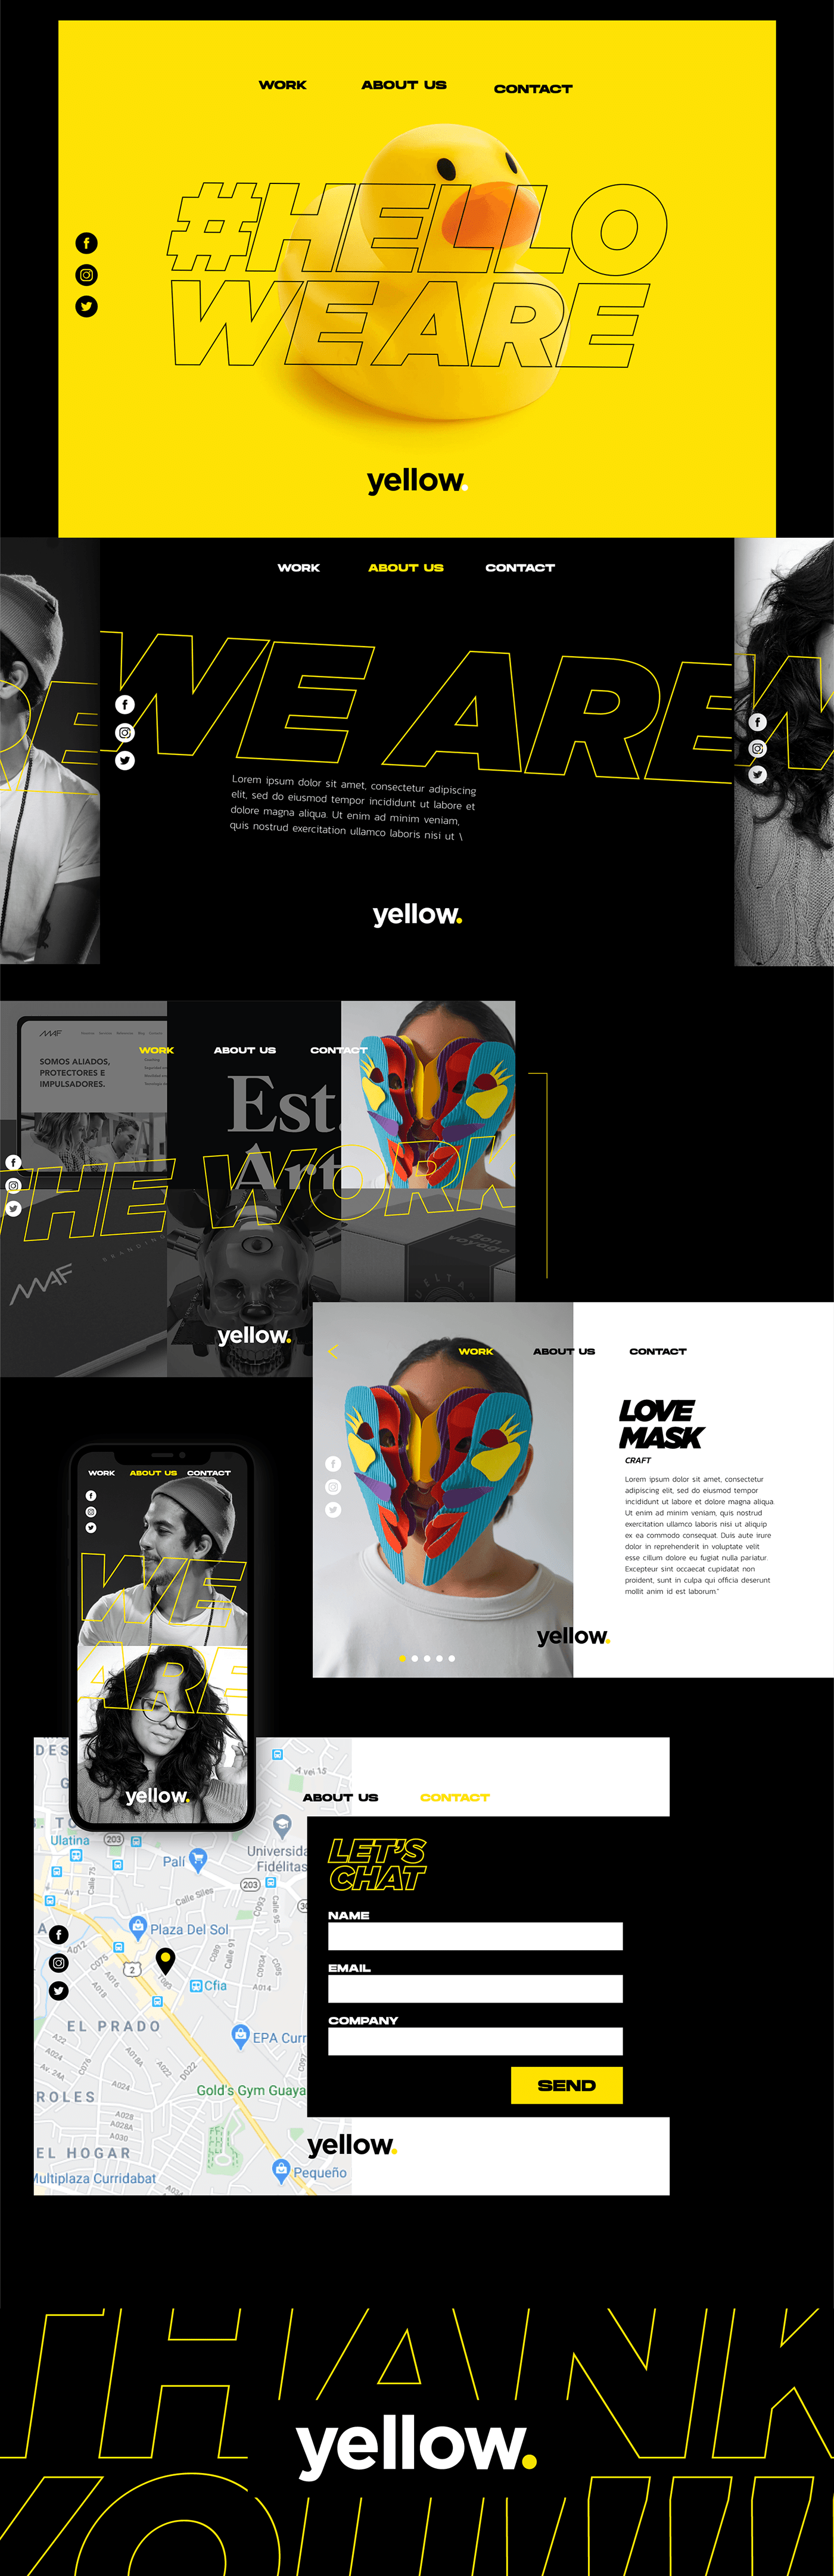 banana ilustrator interaction photoshop sketch studio UI ux webiste yellow